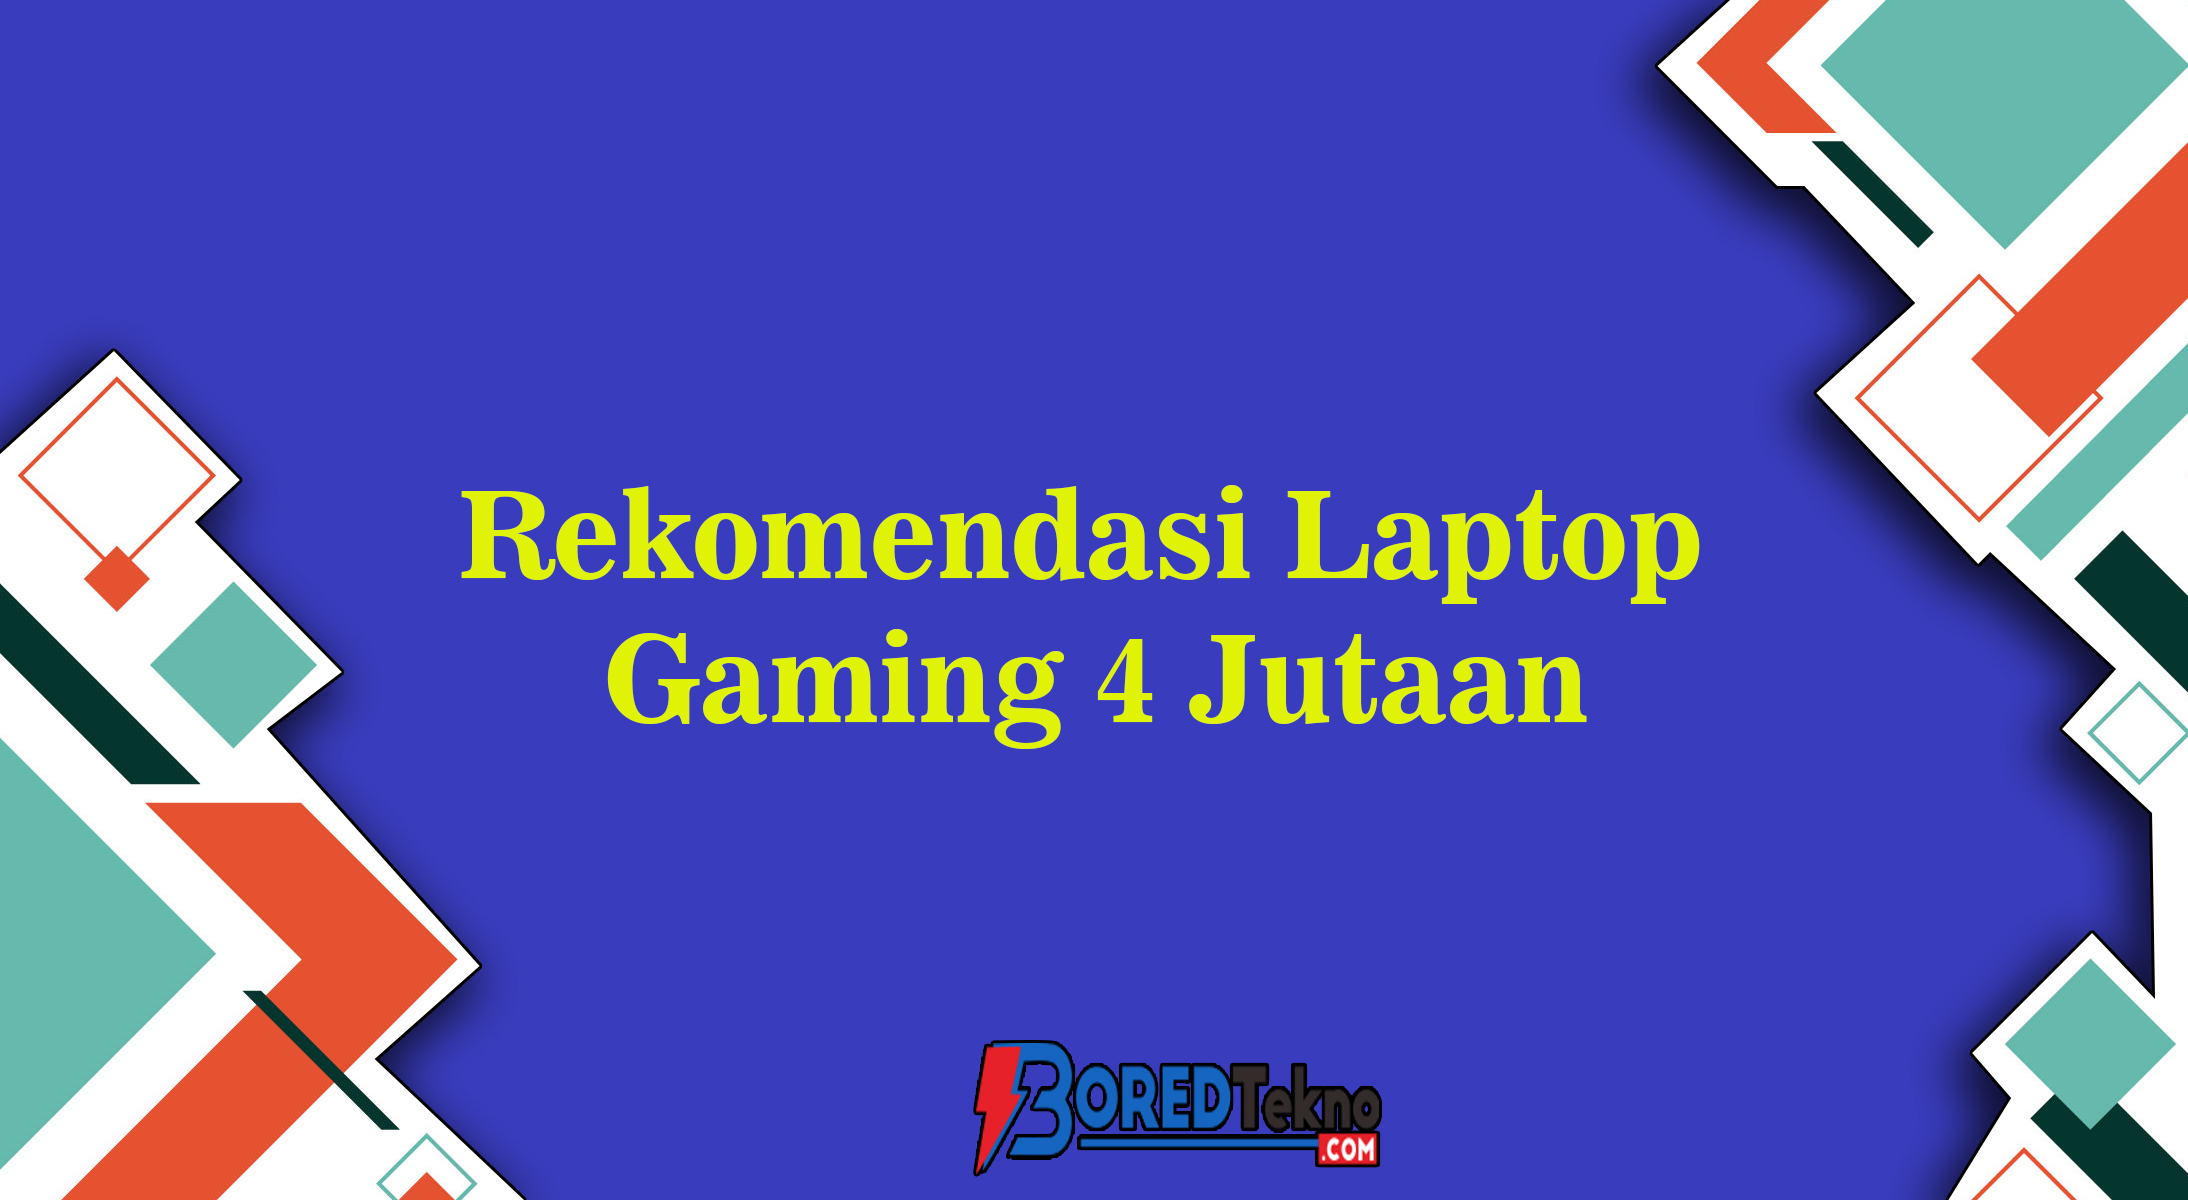 Rekomendasi Laptop Gaming 4 Jutaan